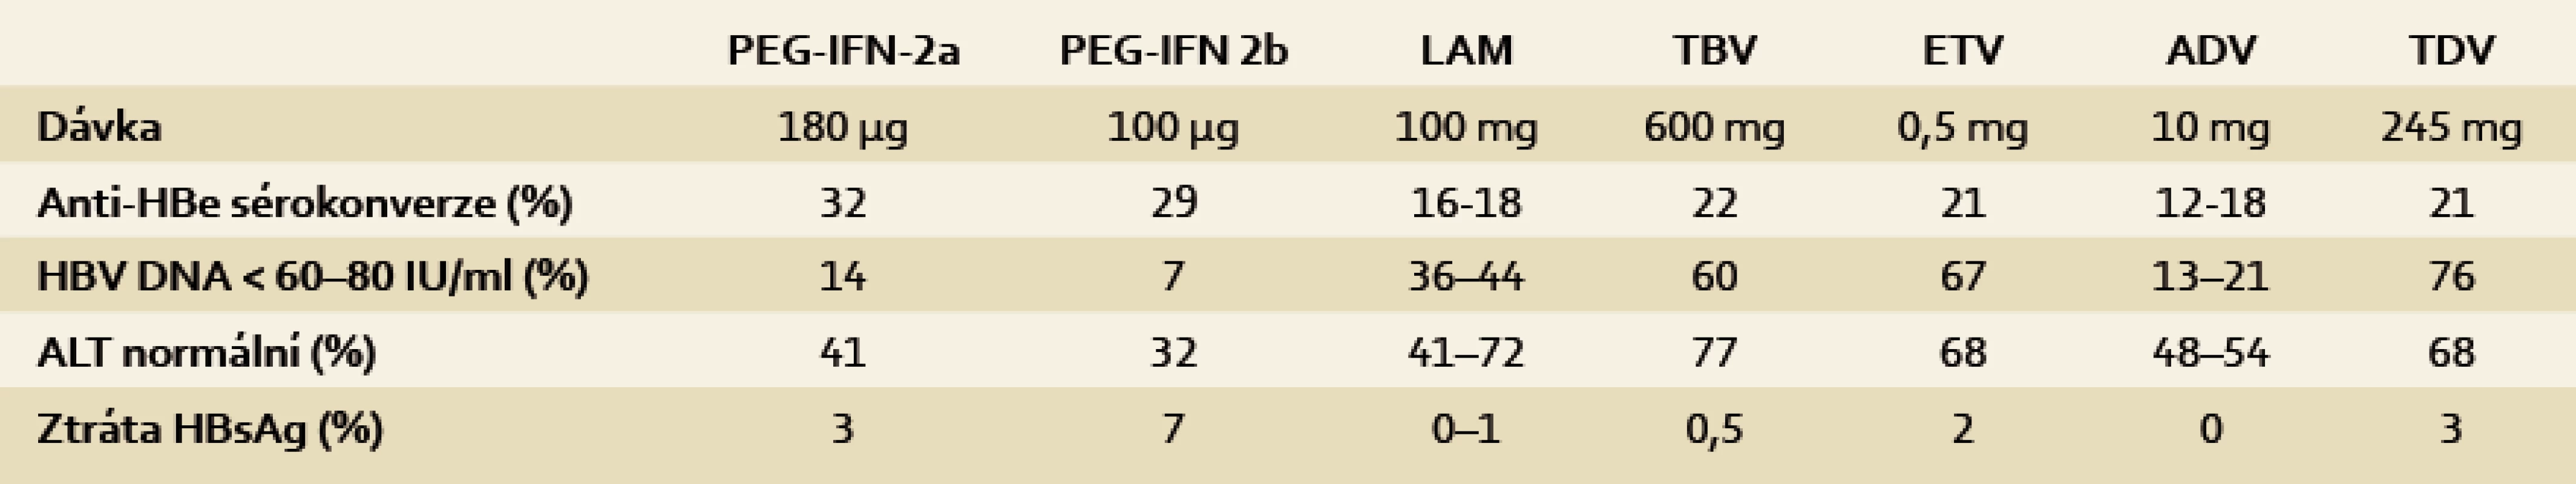 Výsledky léčby HBeag pozitivních pacientů (u PEG-iFn šest měsíců po 48 nebo 52 týdnech léčby, u na po 48 nebo 52 týdnech dosud probíhající léčby) [3].
Tab. 2. The results of treatment of HBeAg-positive patients (PEG-IFN six months after 48 or 52 weeks of treatment, NA after 48 or 52 weeks of treatment still ongoing) [3].